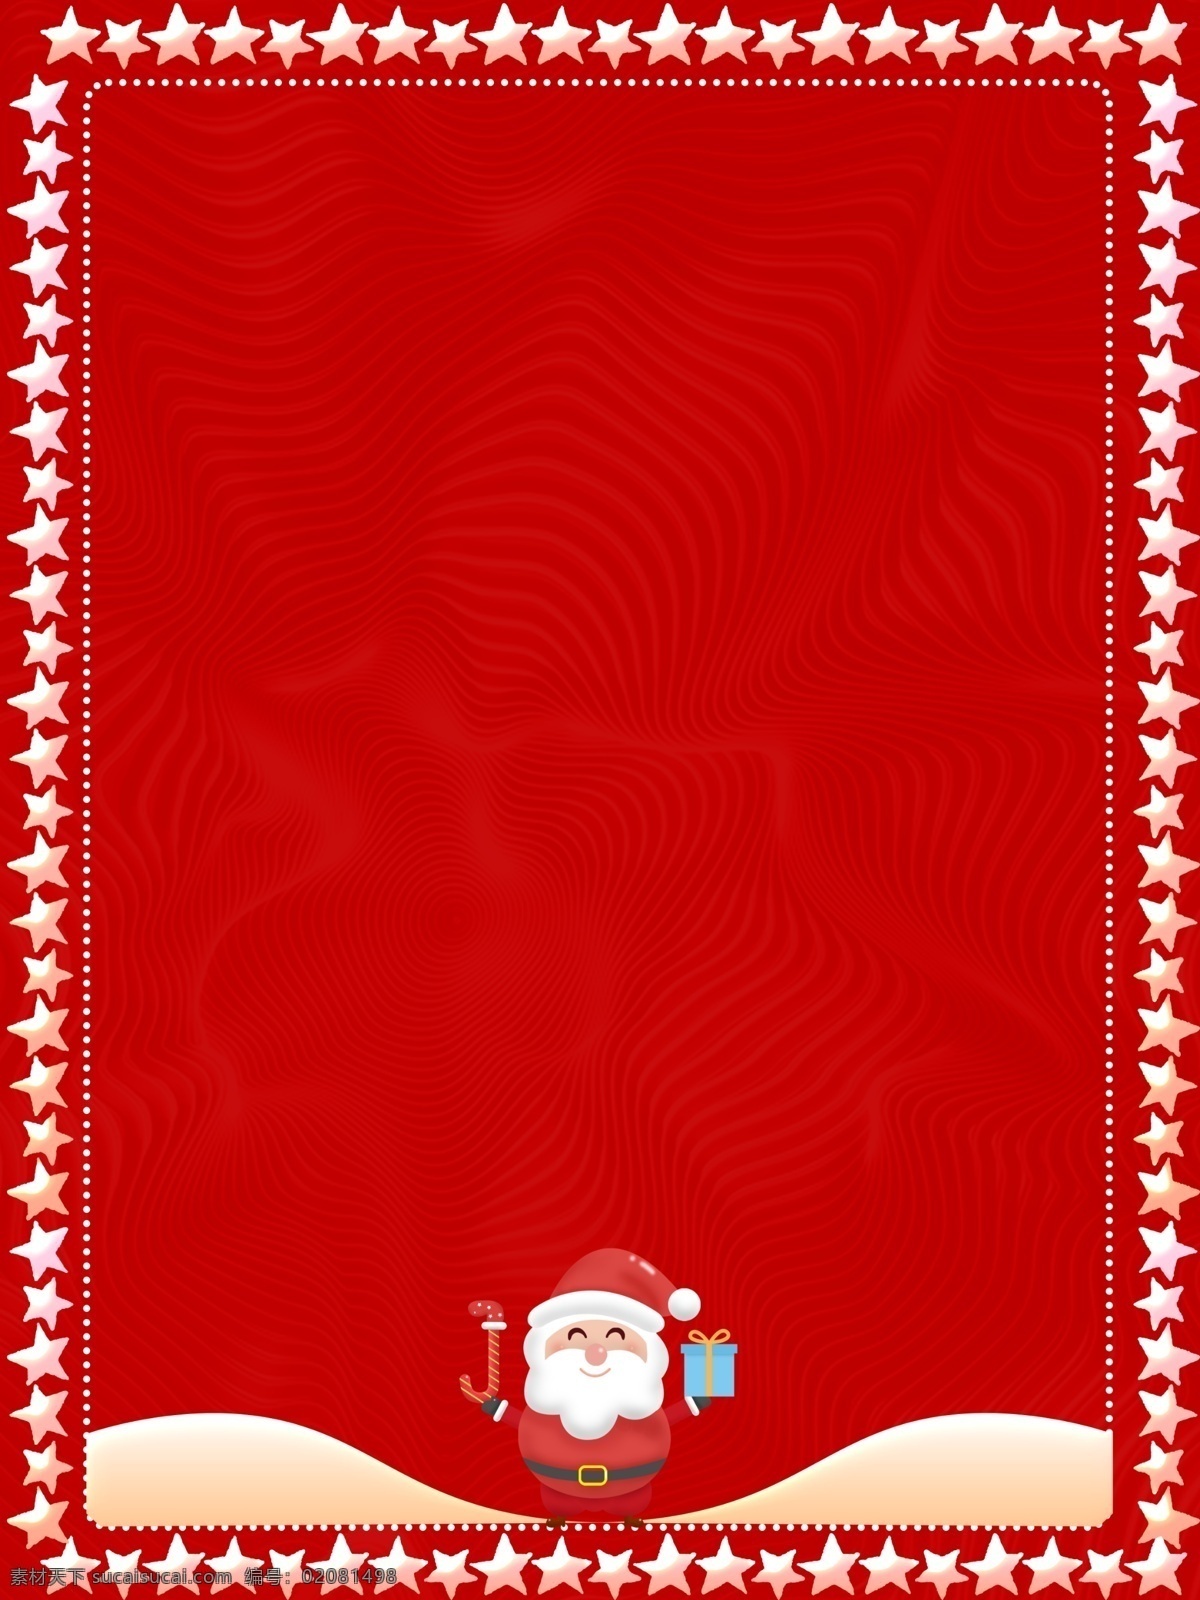 红色 喜庆 圣诞老人 背景 简约 圣诞节 圣诞背景 背景设计 边框背景 圣诞礼物 圣诞节背景 圣诞背景图 圣诞广告 圣诞 新年背景 节日背景